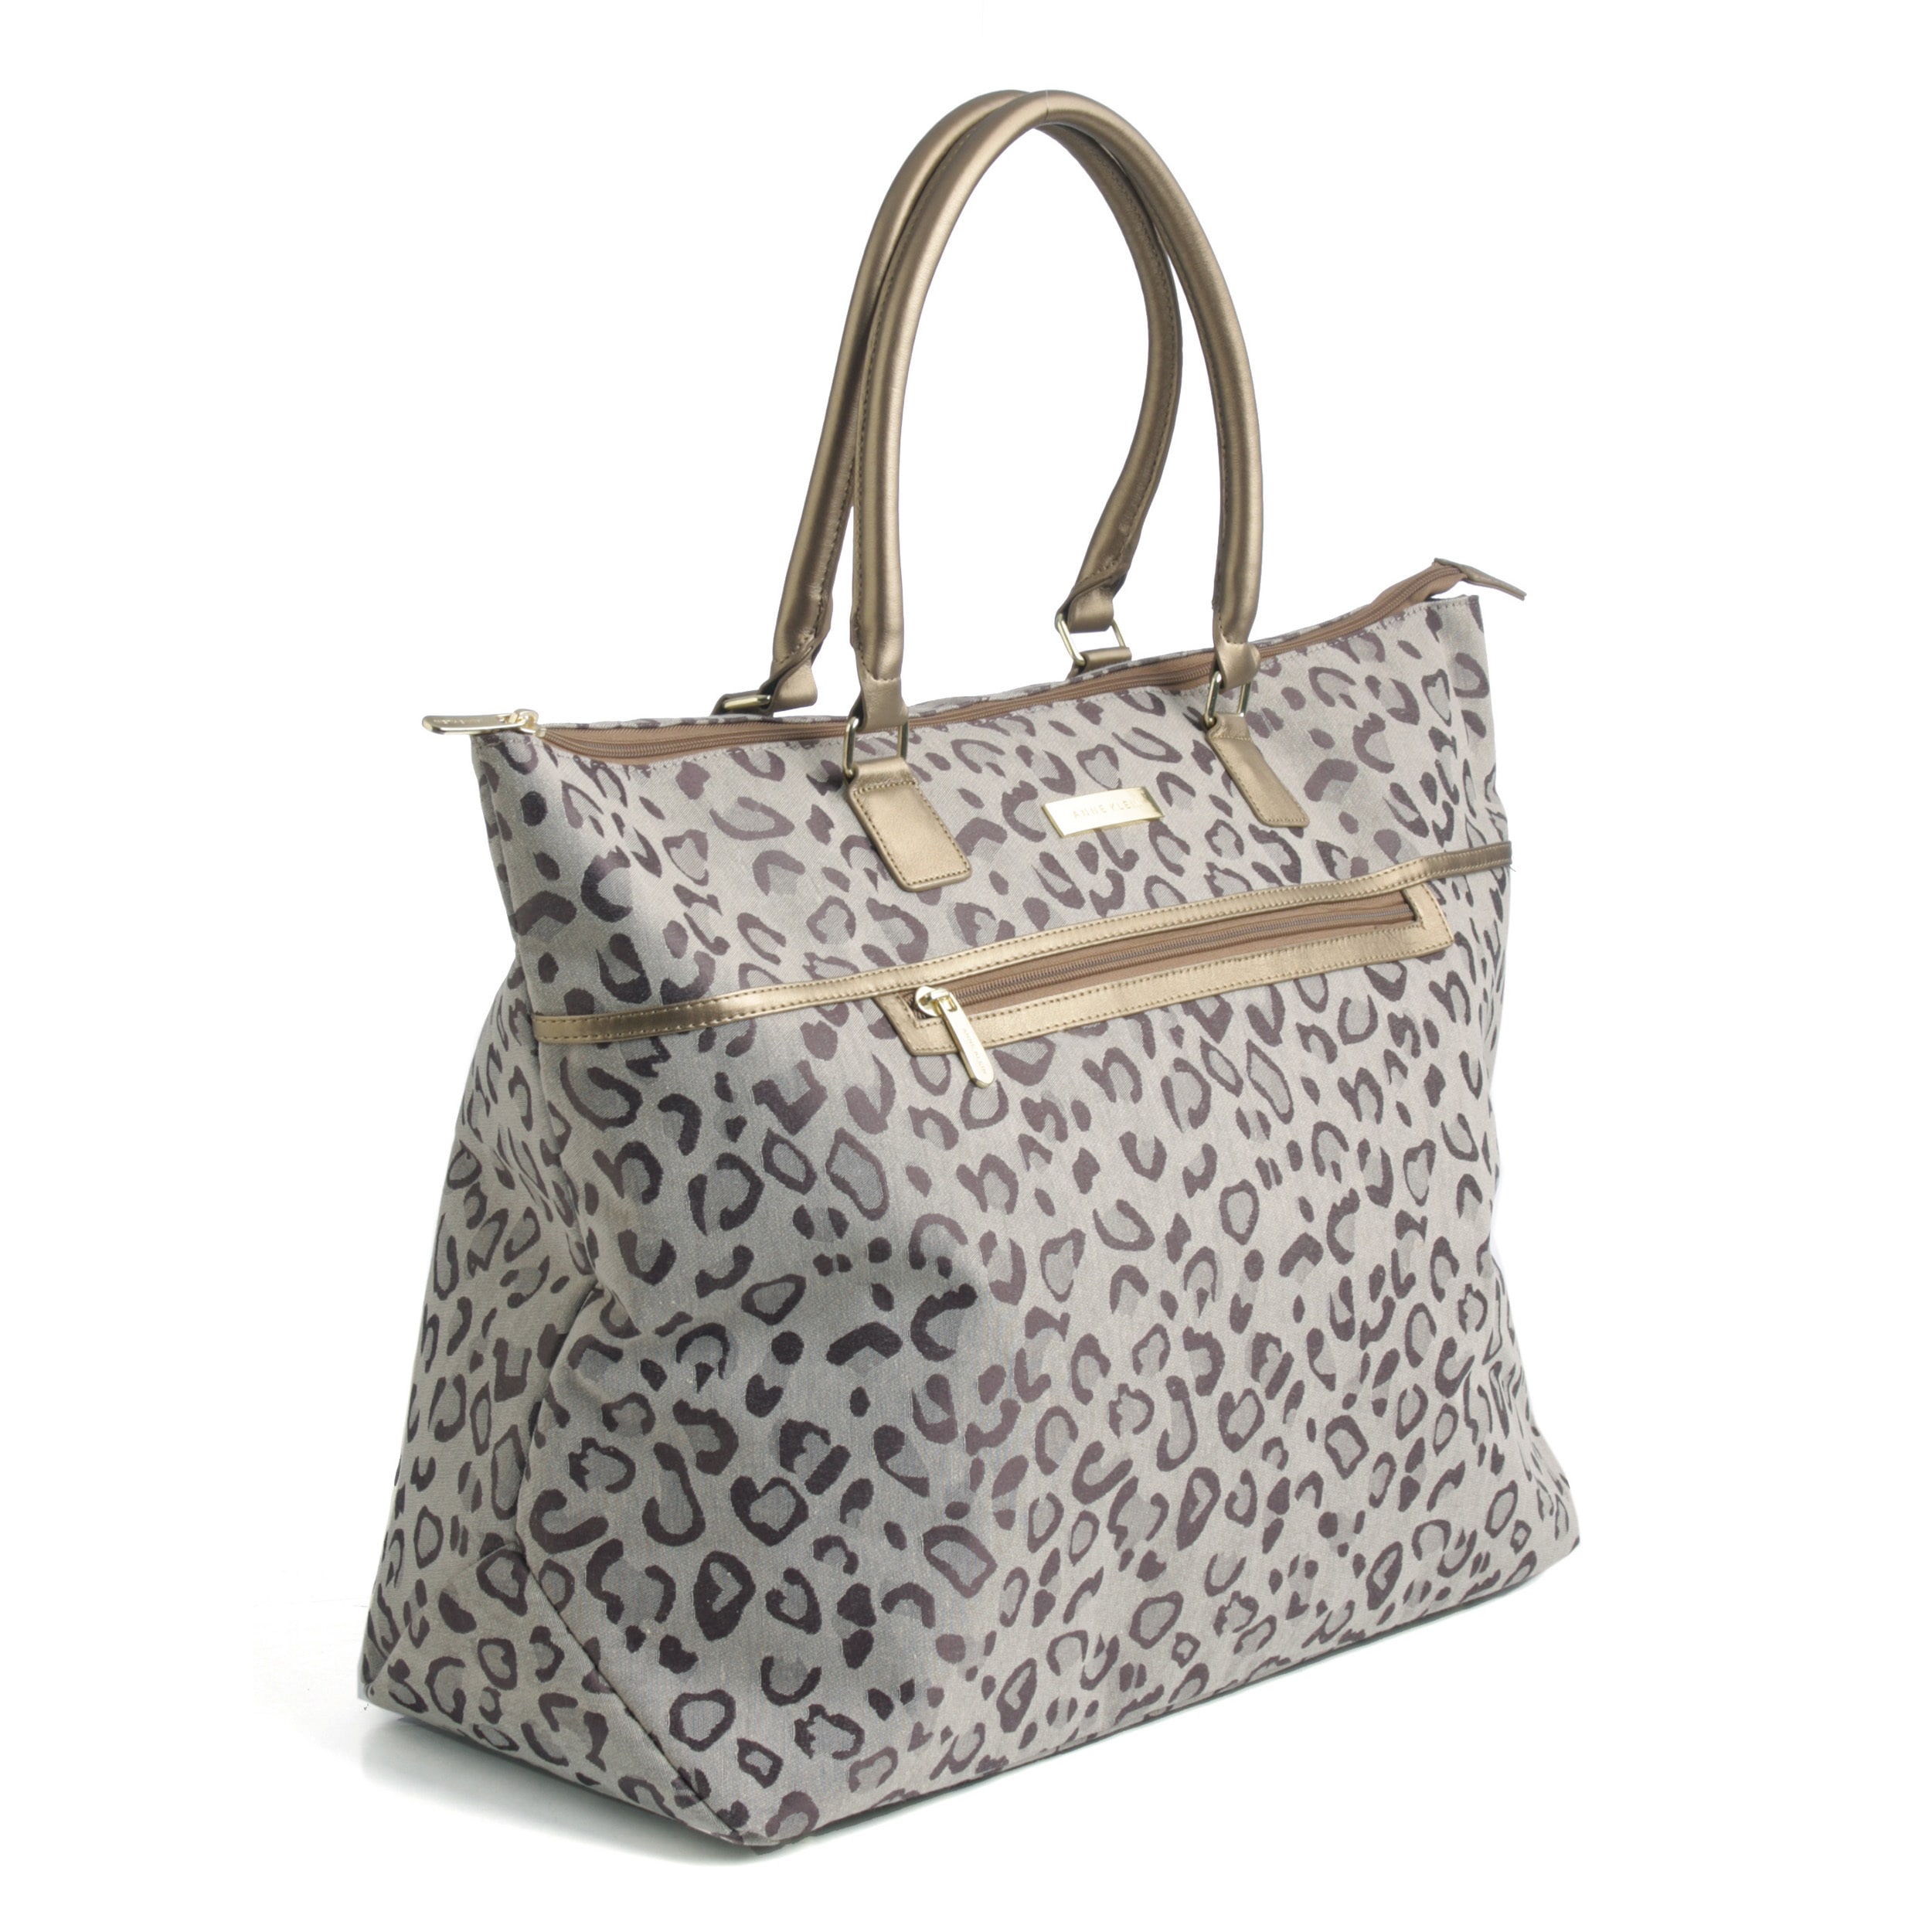 Anne Klein Cheetah Jacquard Soft Travel Tote Bag